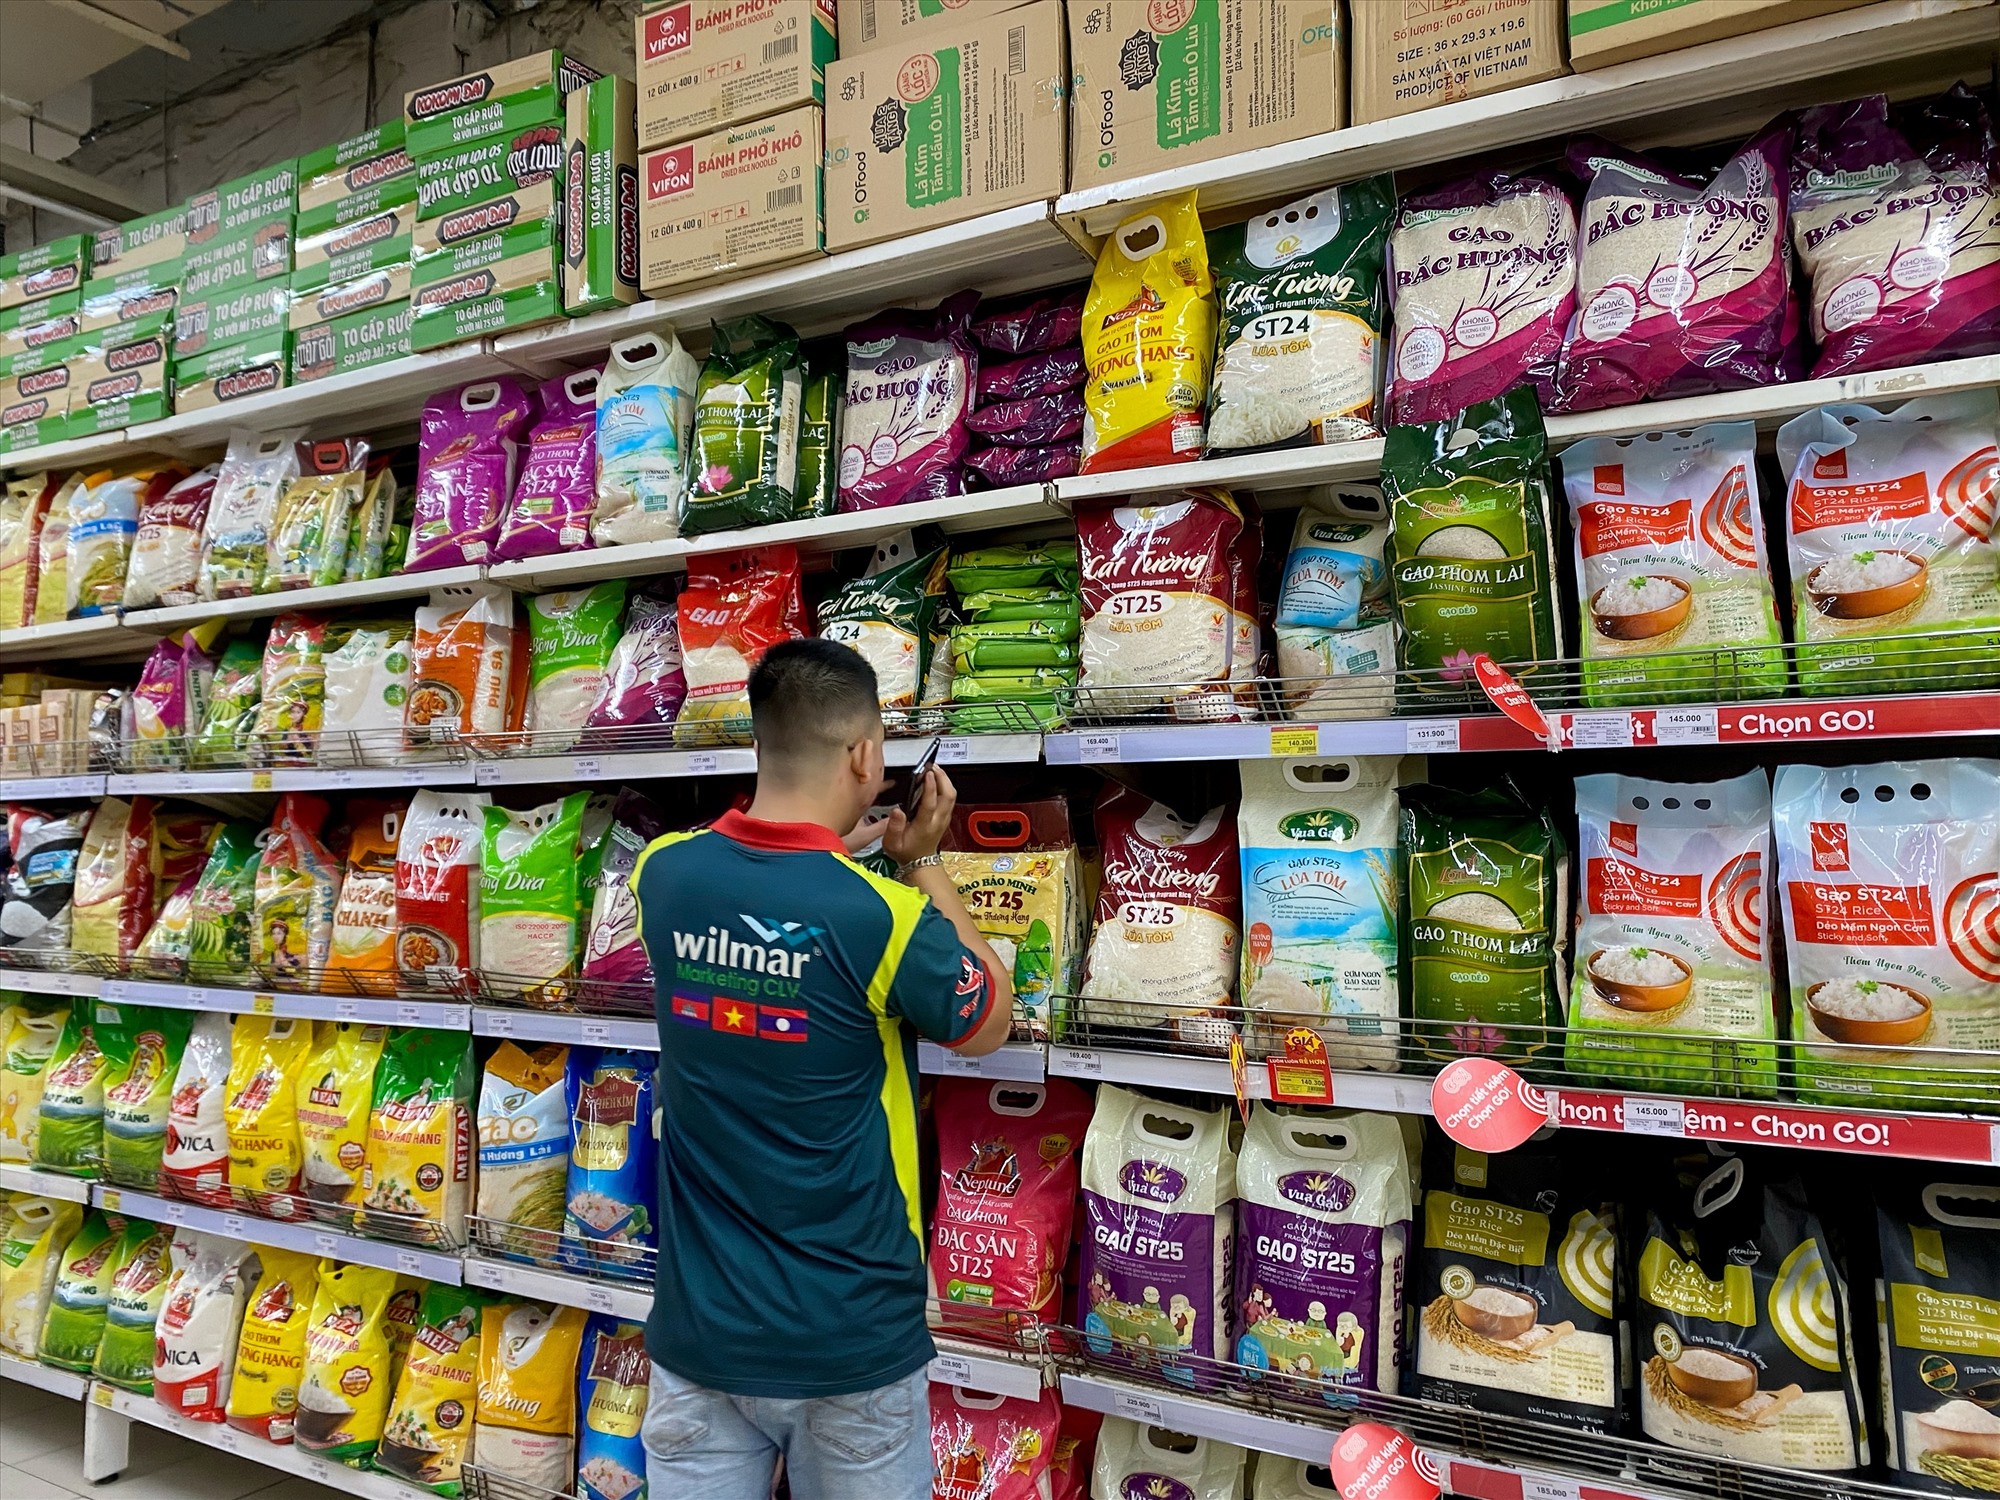 Giá gạo bán lẻ vẫn duy trì ở ổn định, nhiều loại gạo được bày bán đáp ứng nhu cầu người tiêu dùng. Ảnh: Thùy Linh